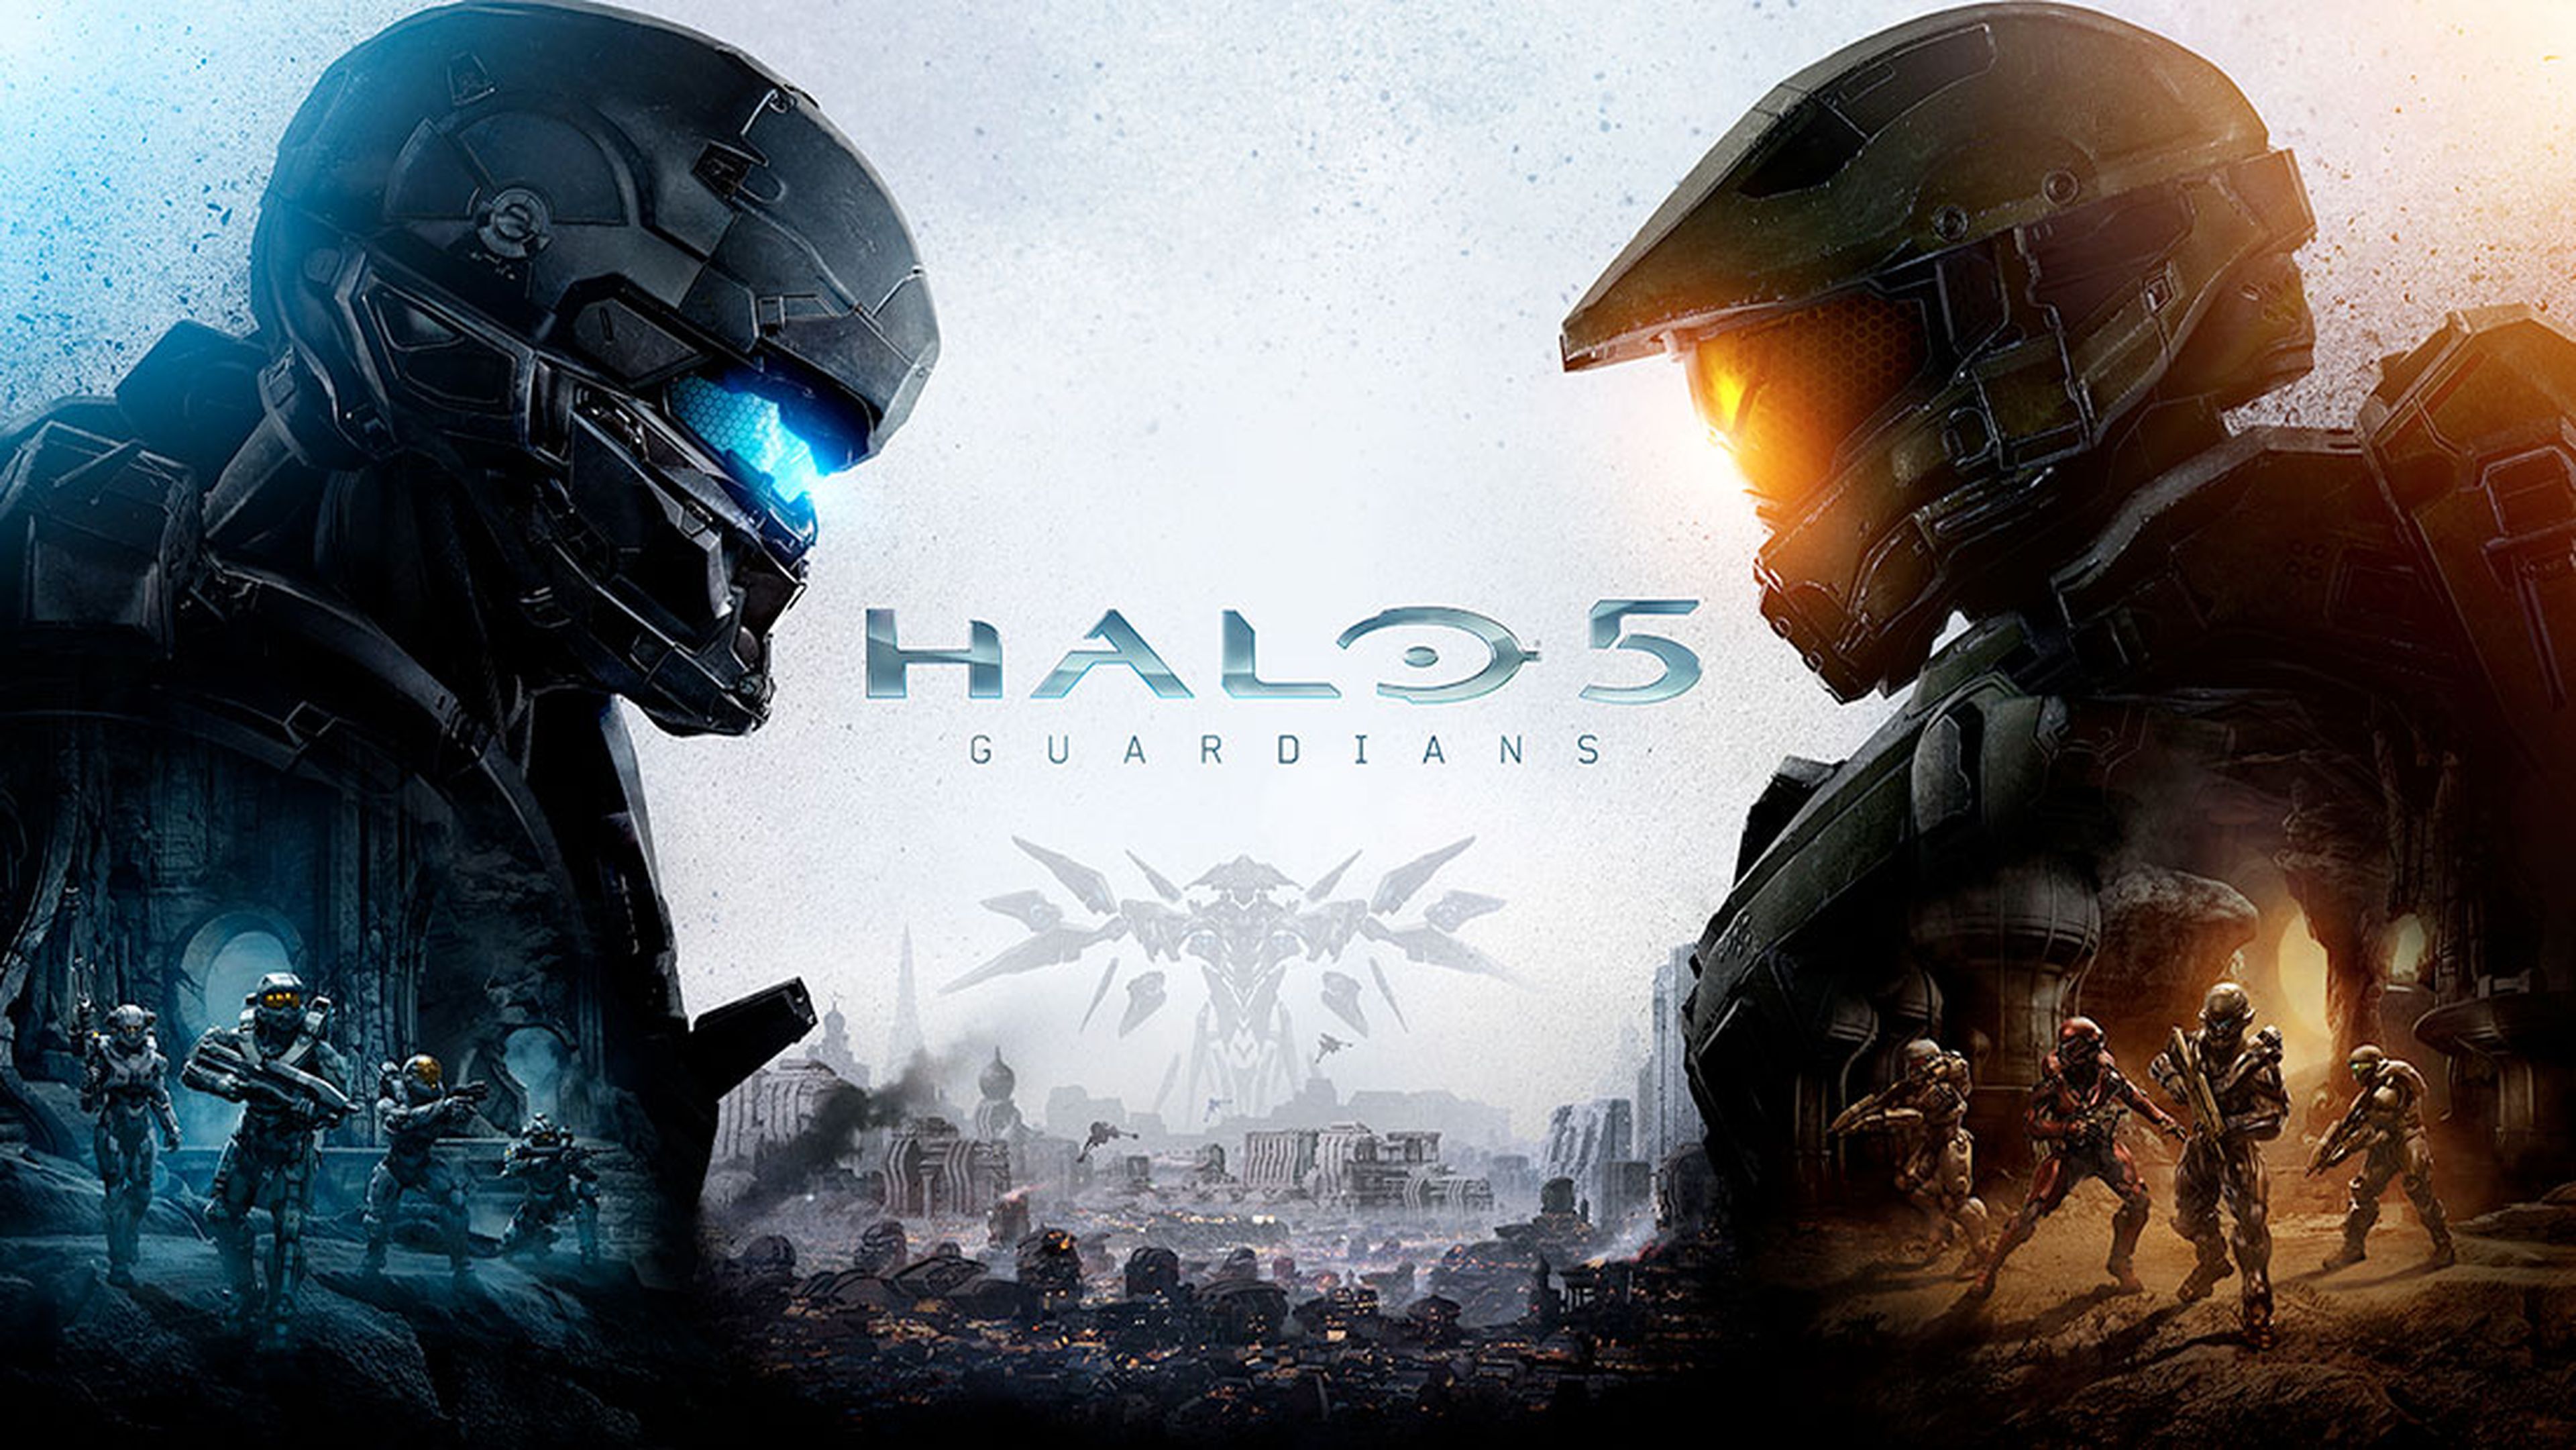 Halo 5 Guardians ha conseguido recaudar 400 millones de dólares a nivel mundial en su primera semana a la venta.